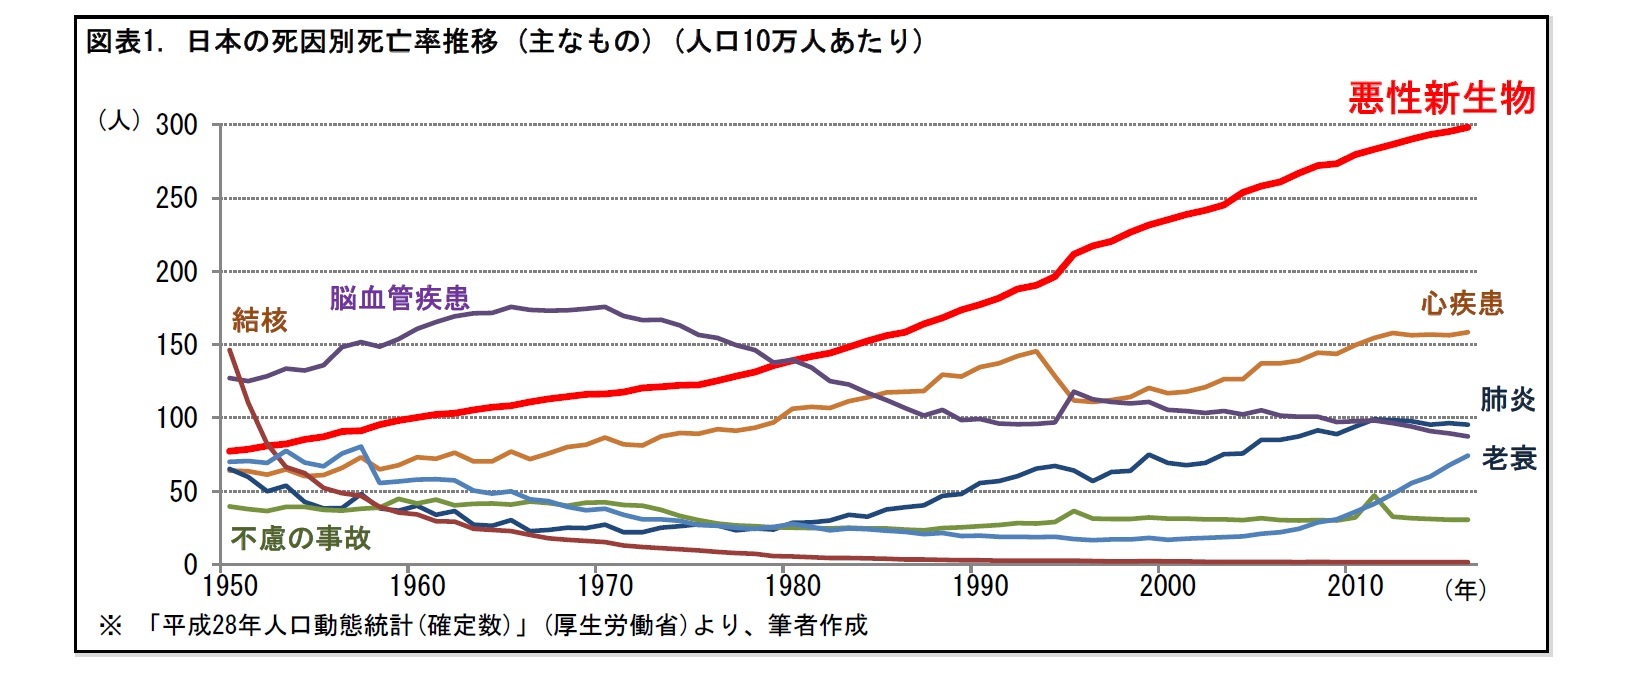 図表1. 日本の死因別死亡率推移 (主なもの) (人口10万人あたり)